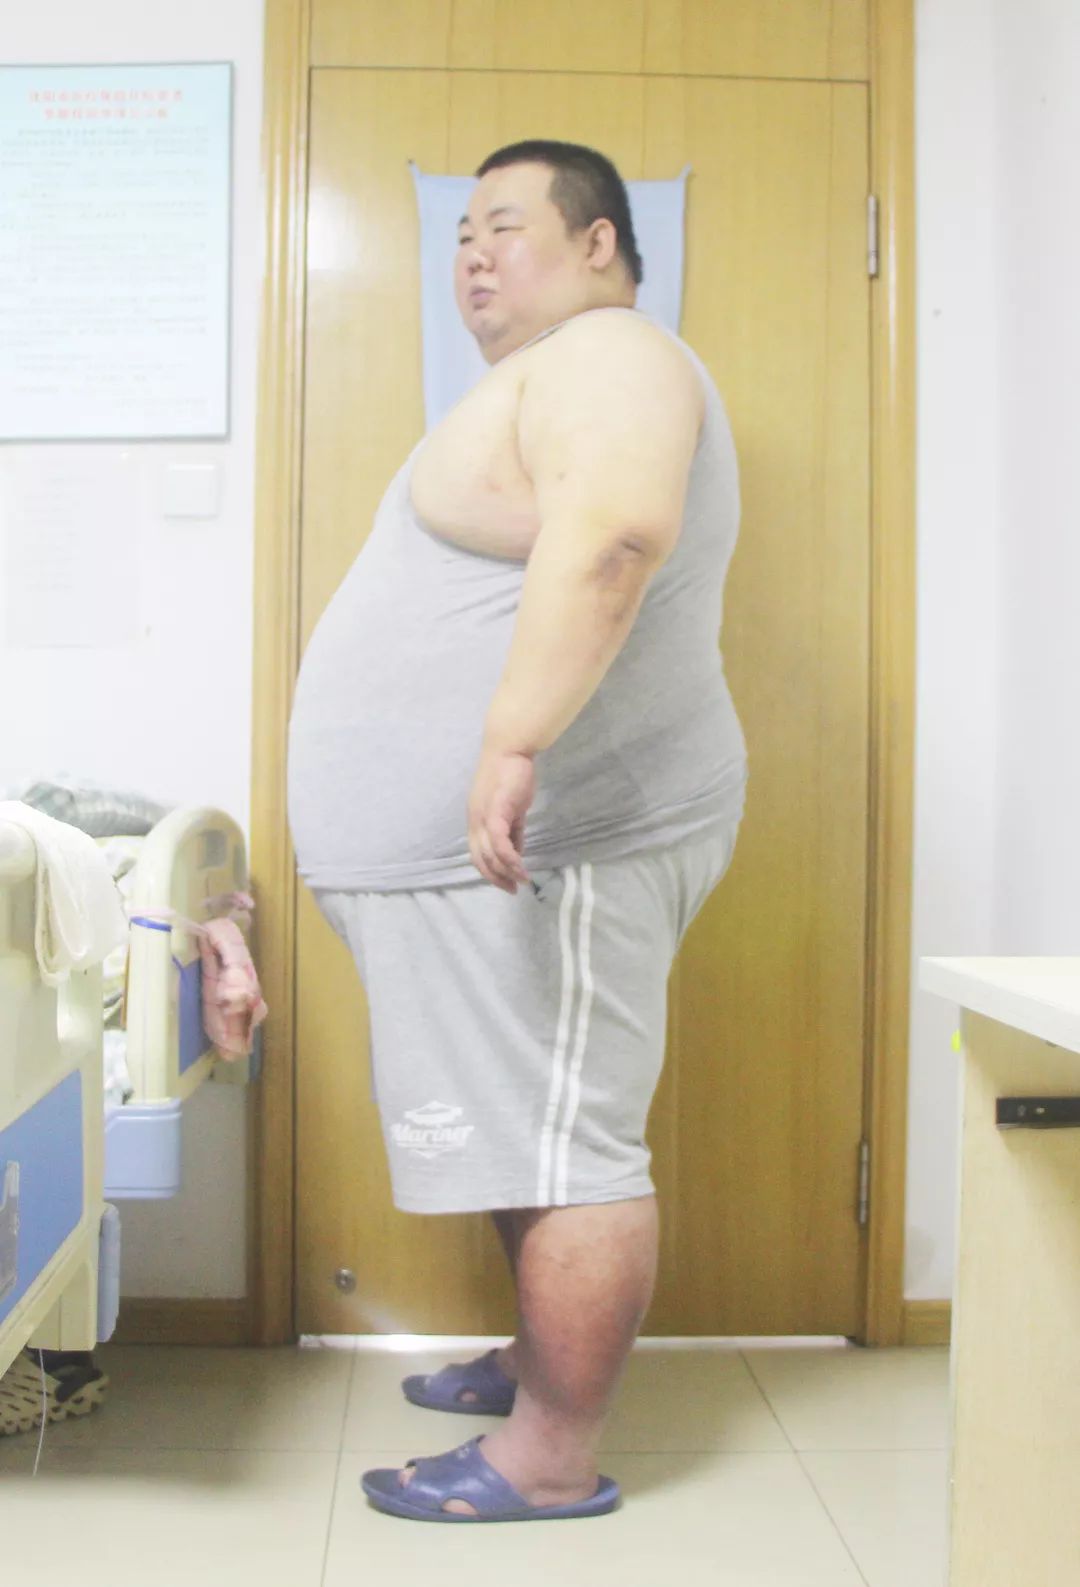 新闻正前方报道400多斤巨胖生活艰难急求减肥良方爱心医院伸出援手助